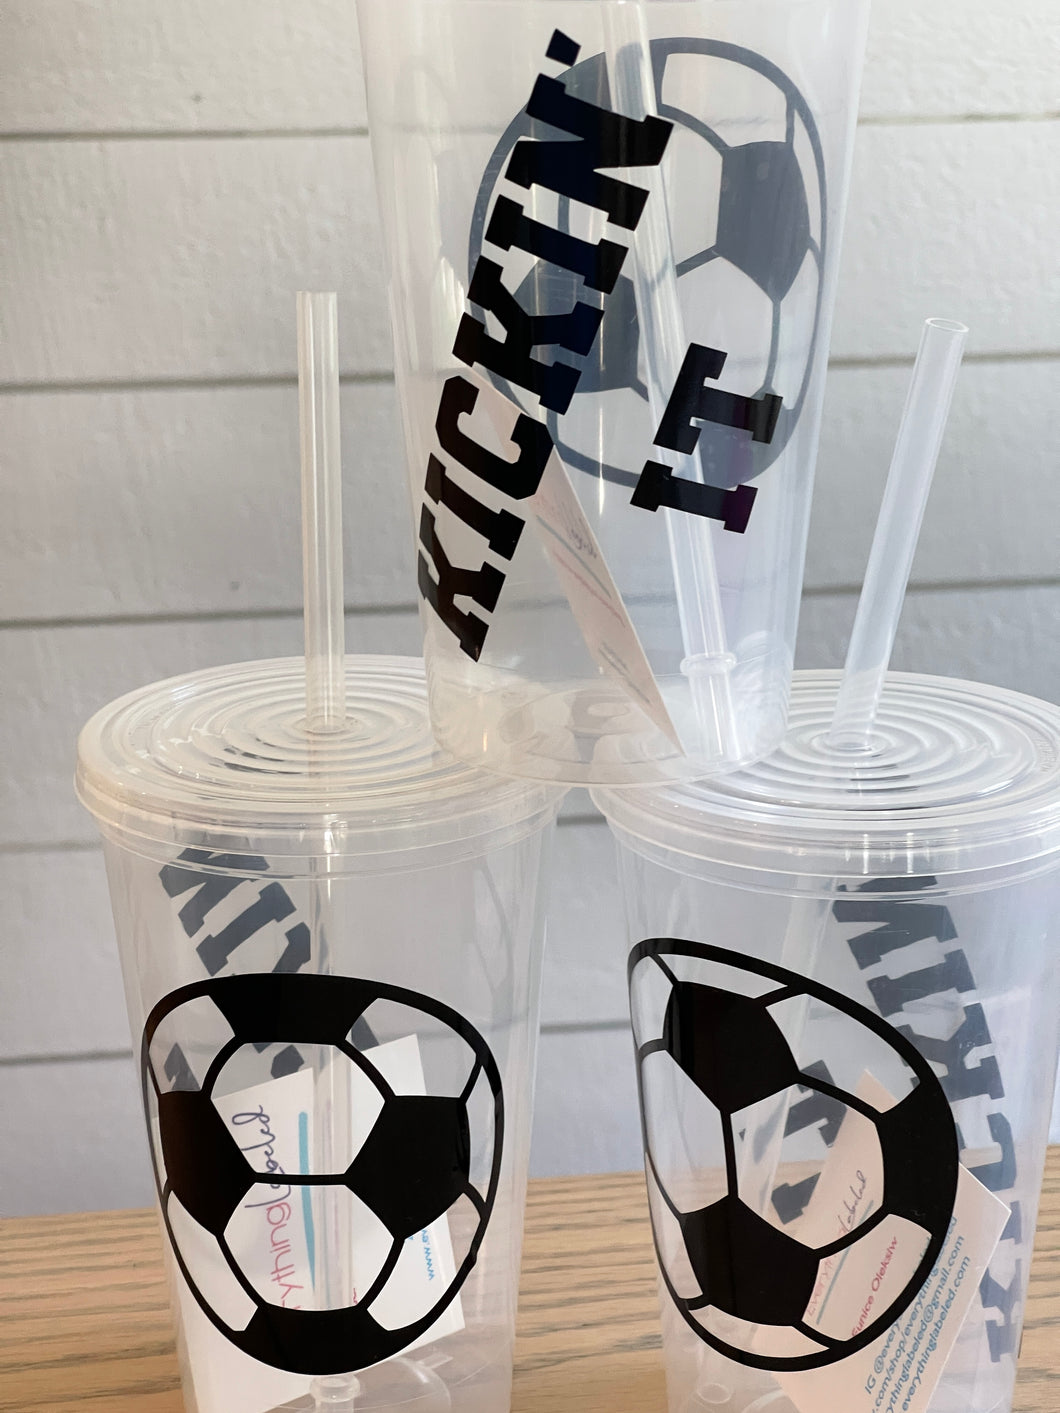 Stadium Cups